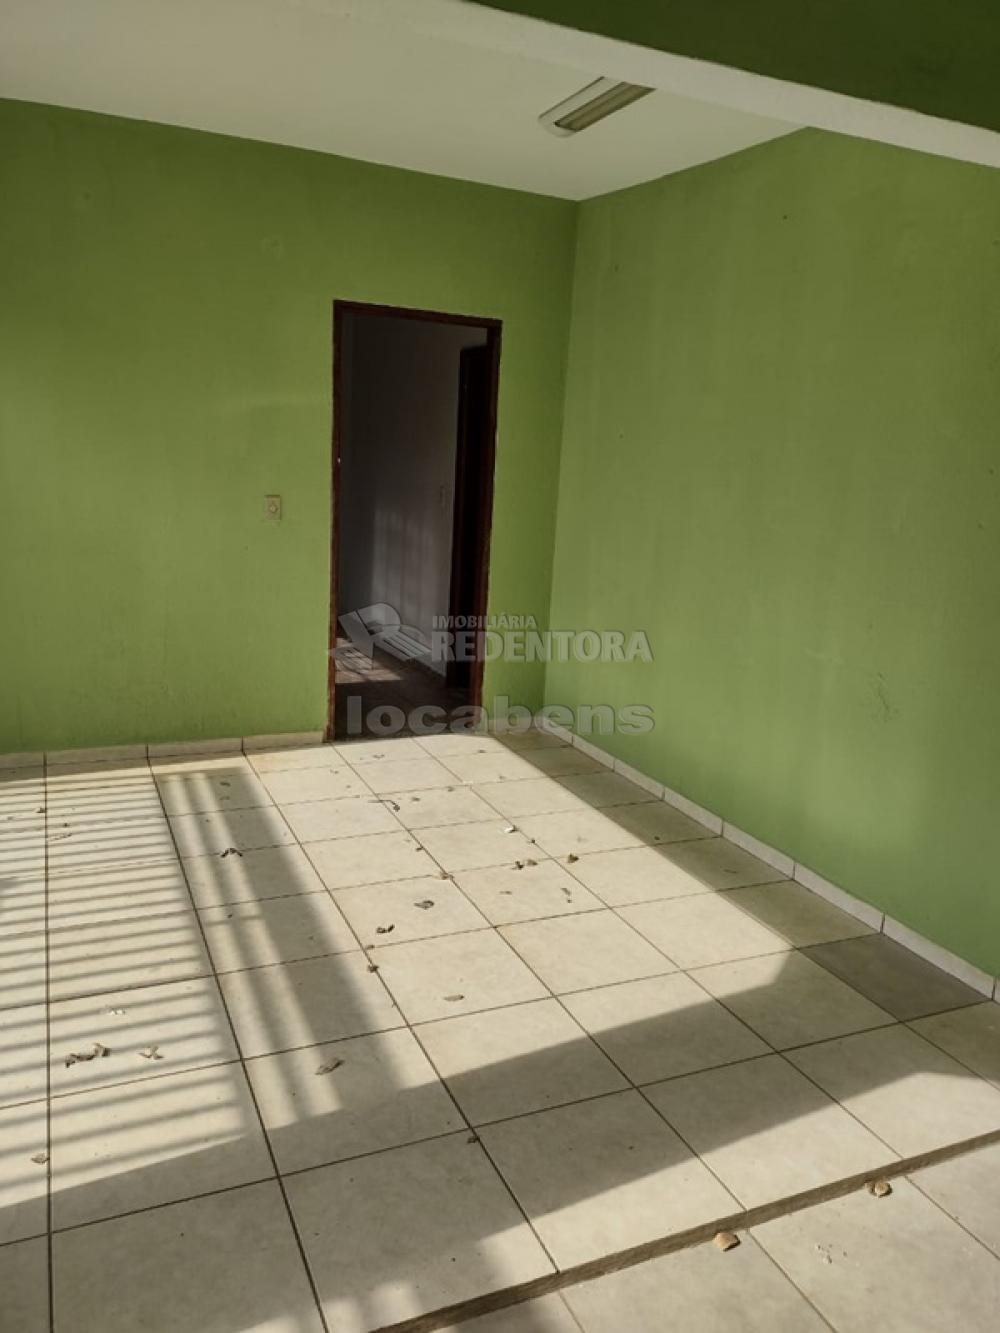 Alugar Casa / Padrão em São José do Rio Preto apenas R$ 900,00 - Foto 7